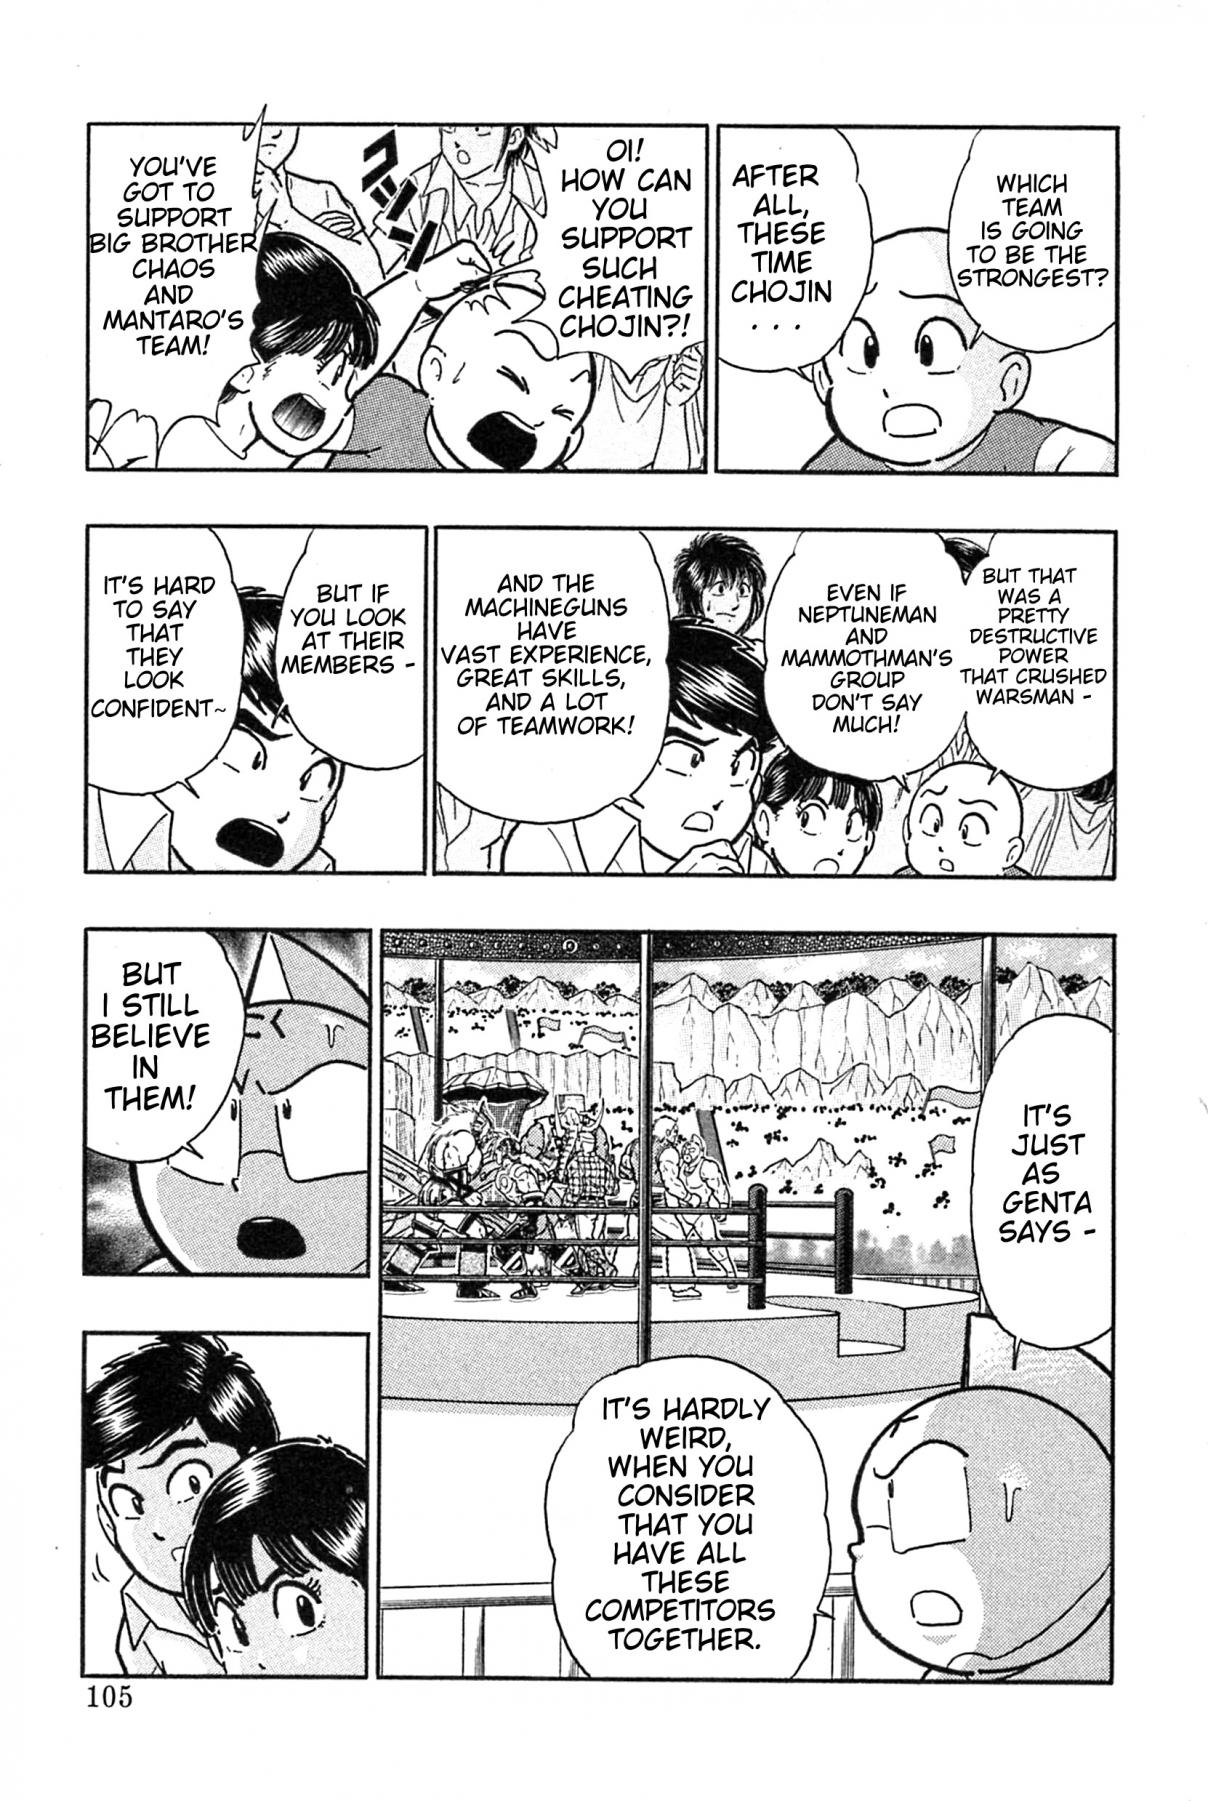 Kinnikuman II Sei: Kyuukyoku Choujin Tag Hen Vol. 17 Ch. 183 The Big Incident at Shinobazu Pond!